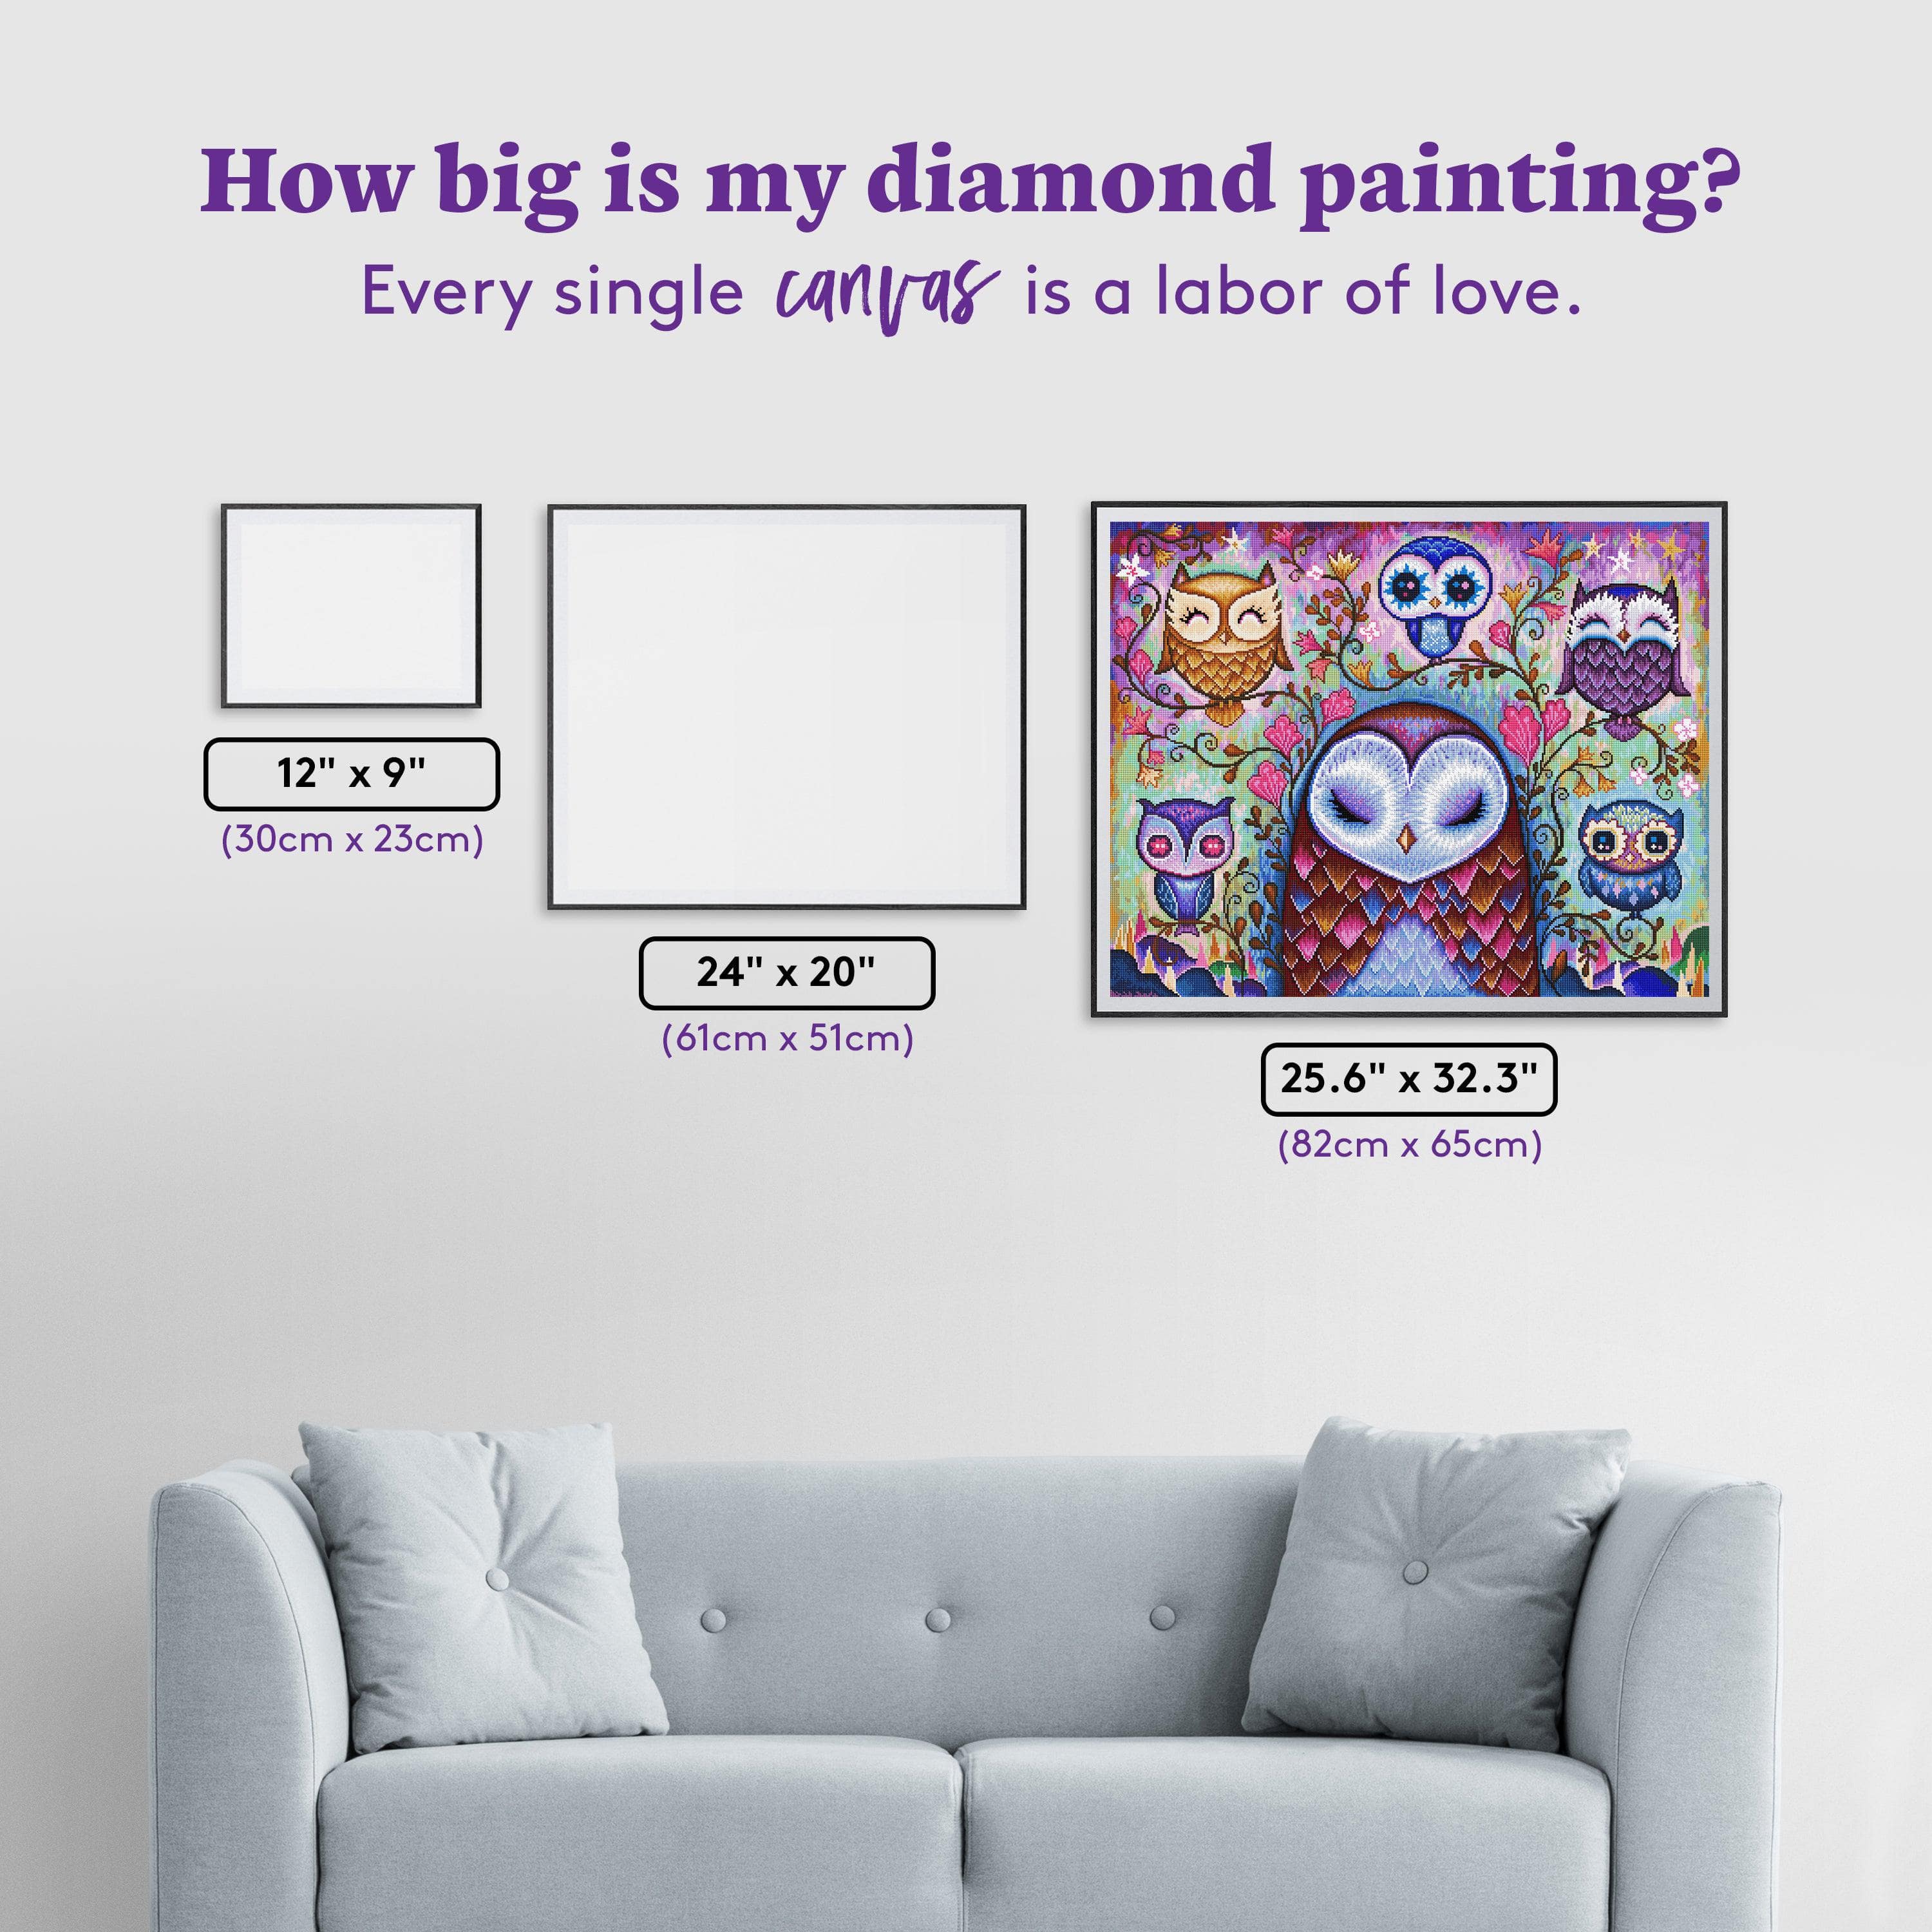 Sparkly Selections Pajama Owl Diamond Painting Kit, Round Diamonds